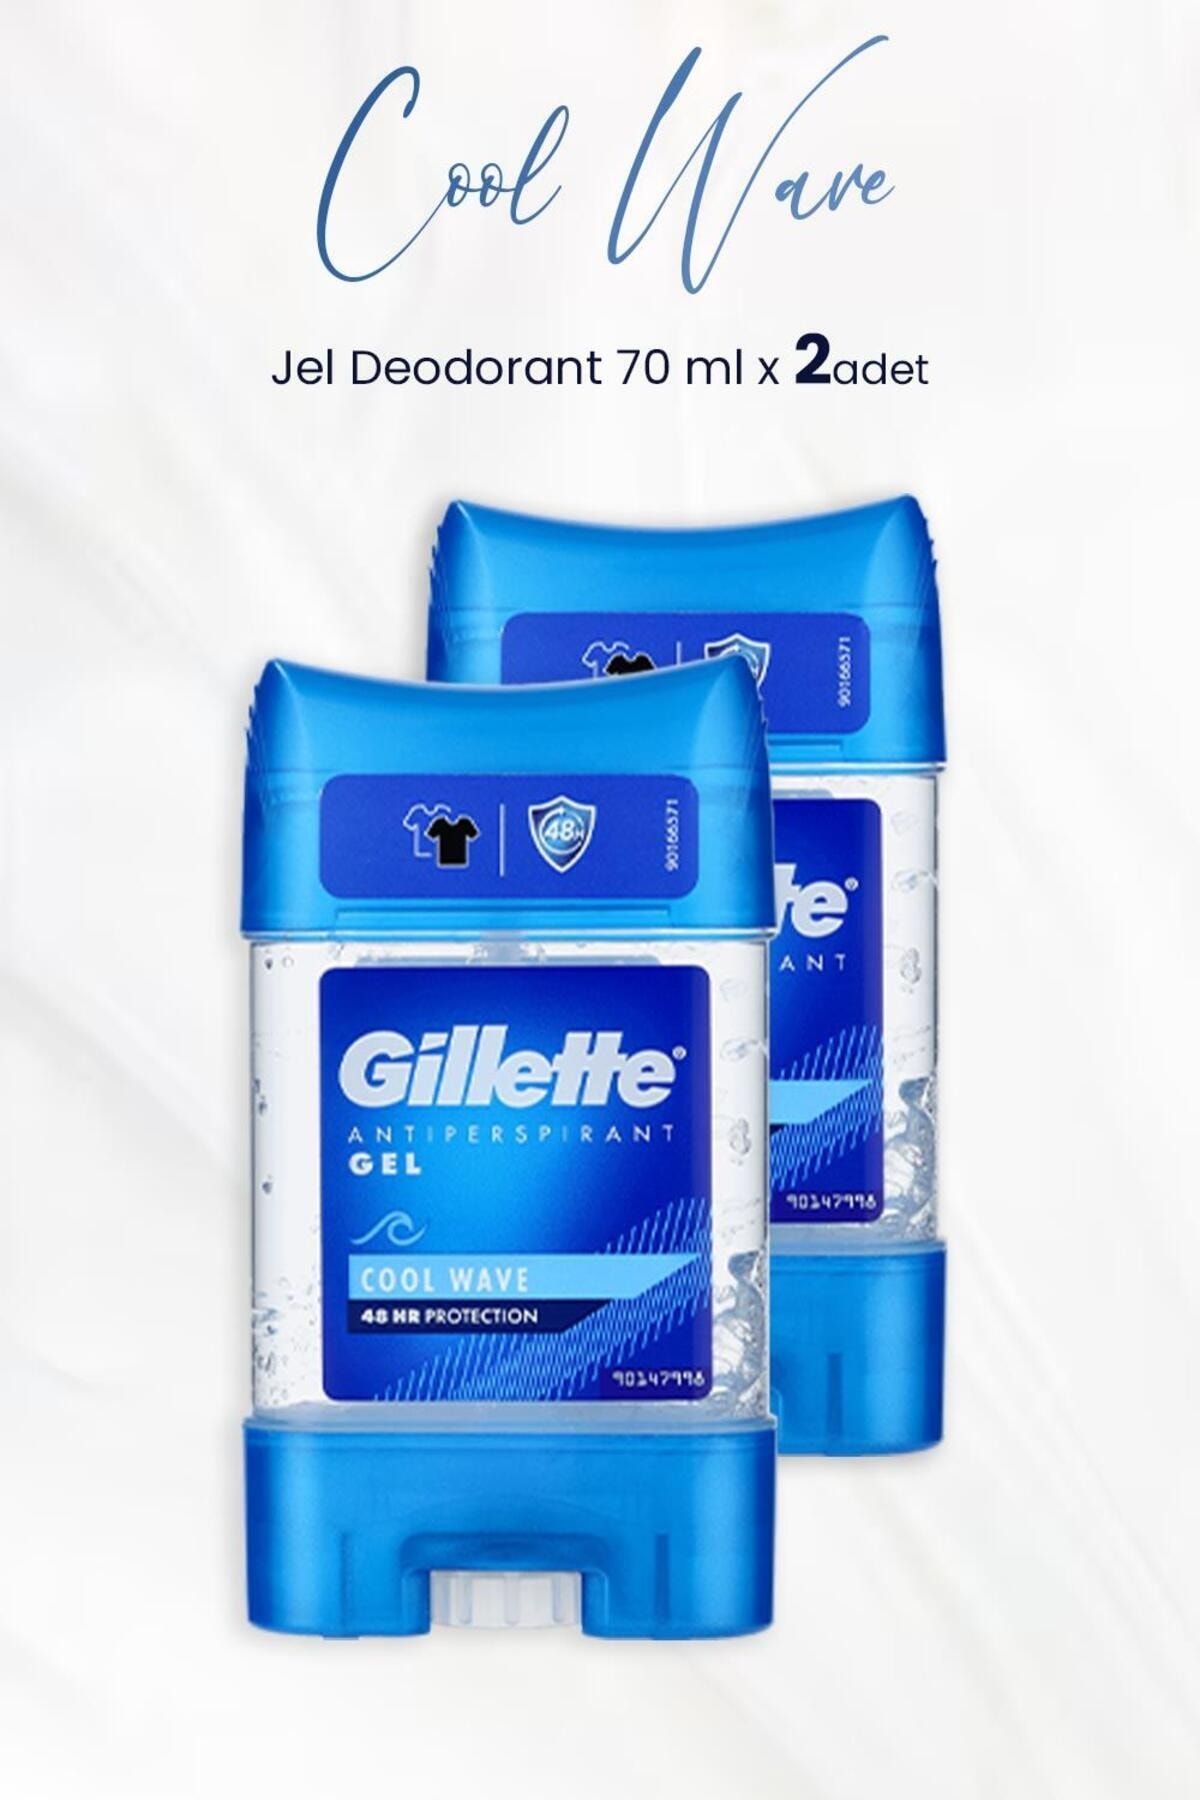 Gillette Antiperspirant Gel Cool Wave 70 ml x 2 Adet